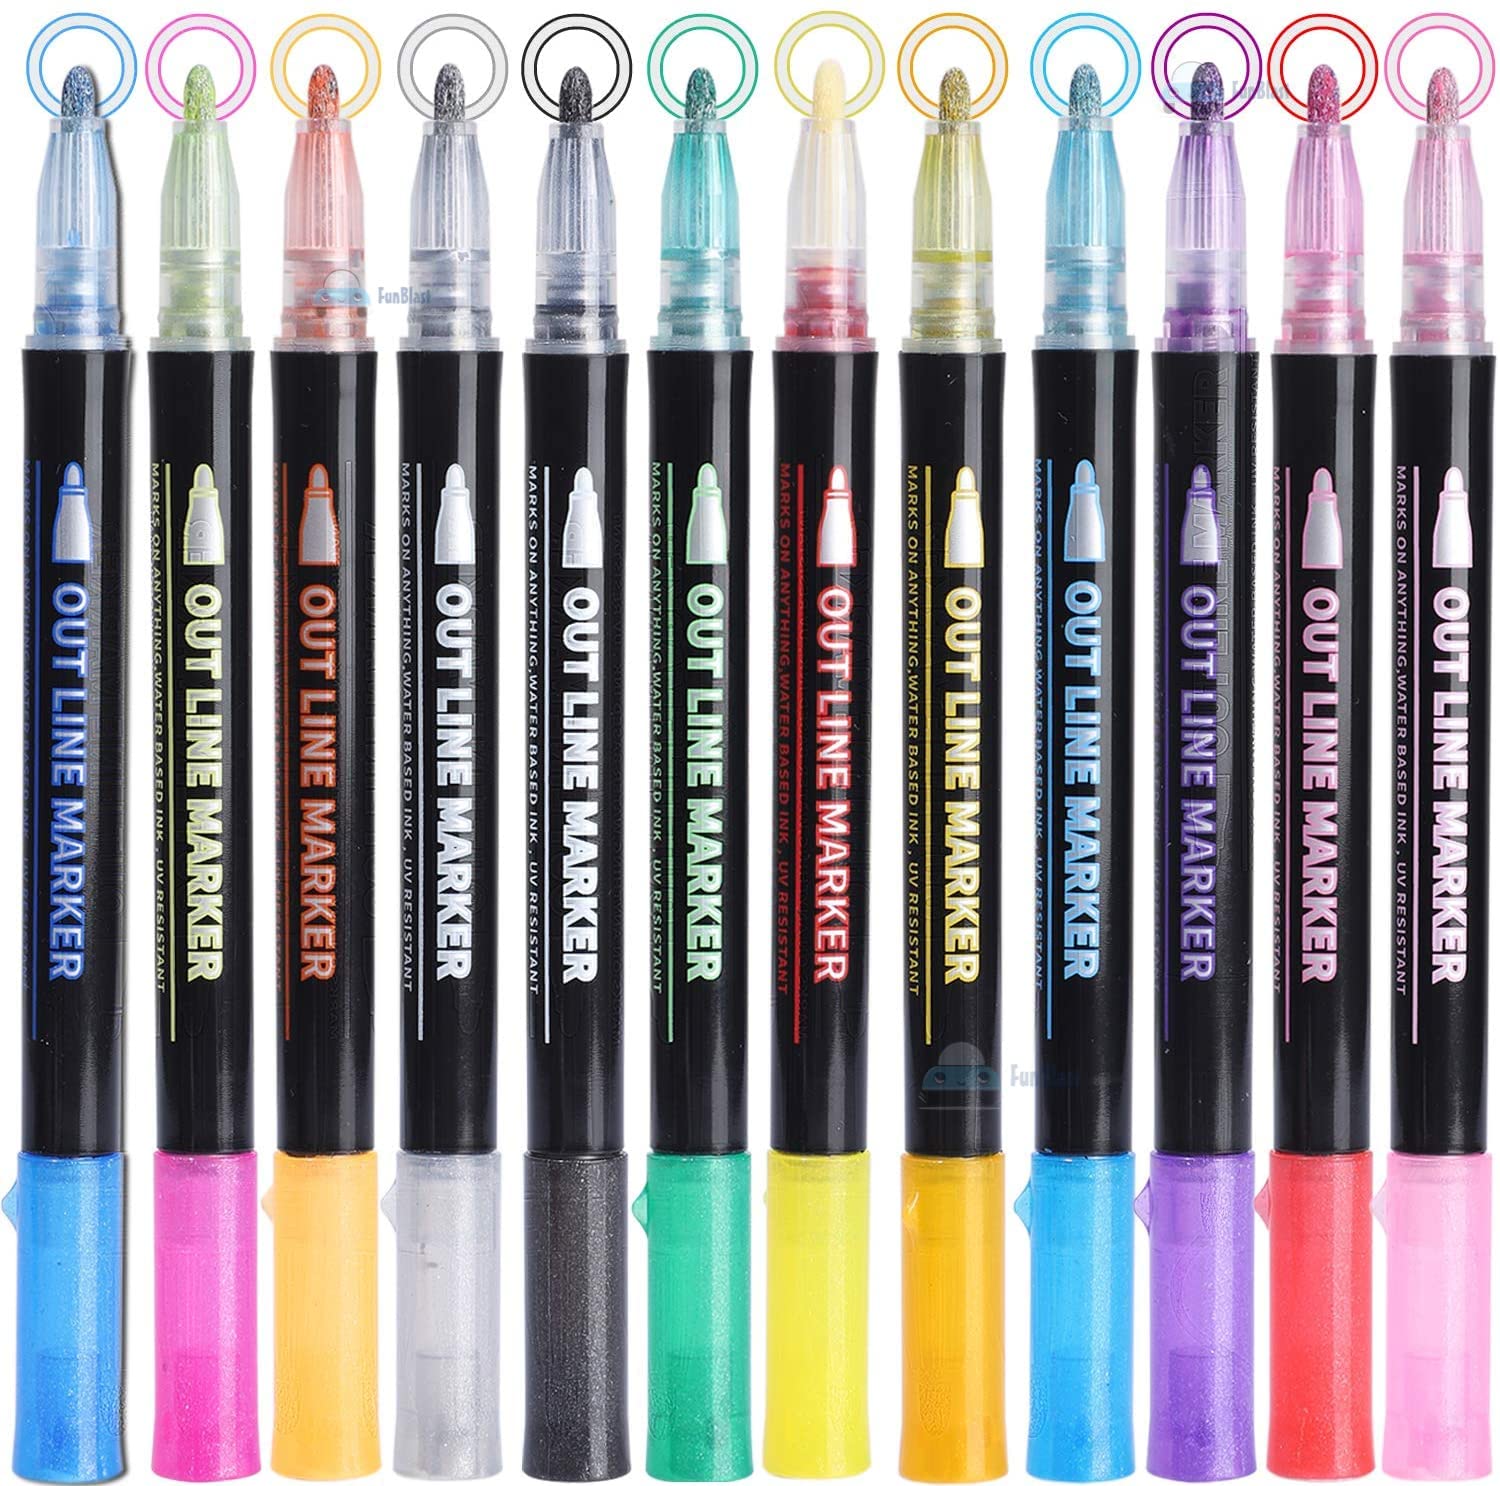 12pcs/set, 12 Colors, Washable Children Marker Pen, Art Drawing